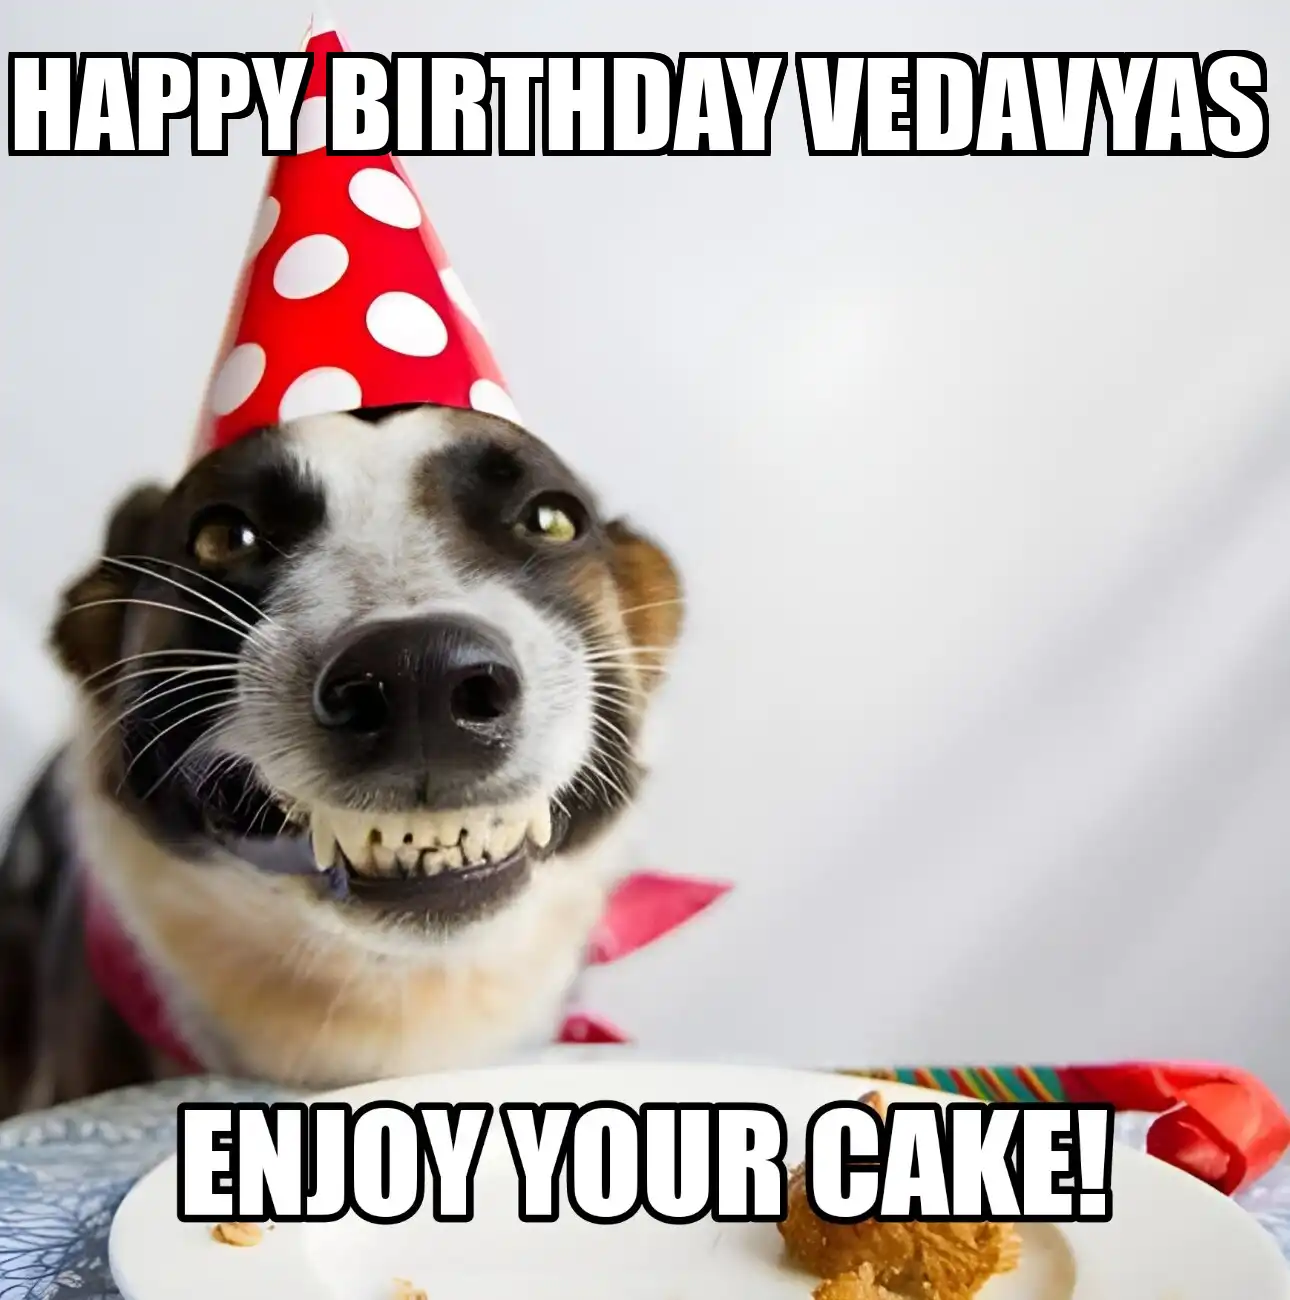 Happy Birthday Vedavyas Enjoy Your Cake Dog Meme